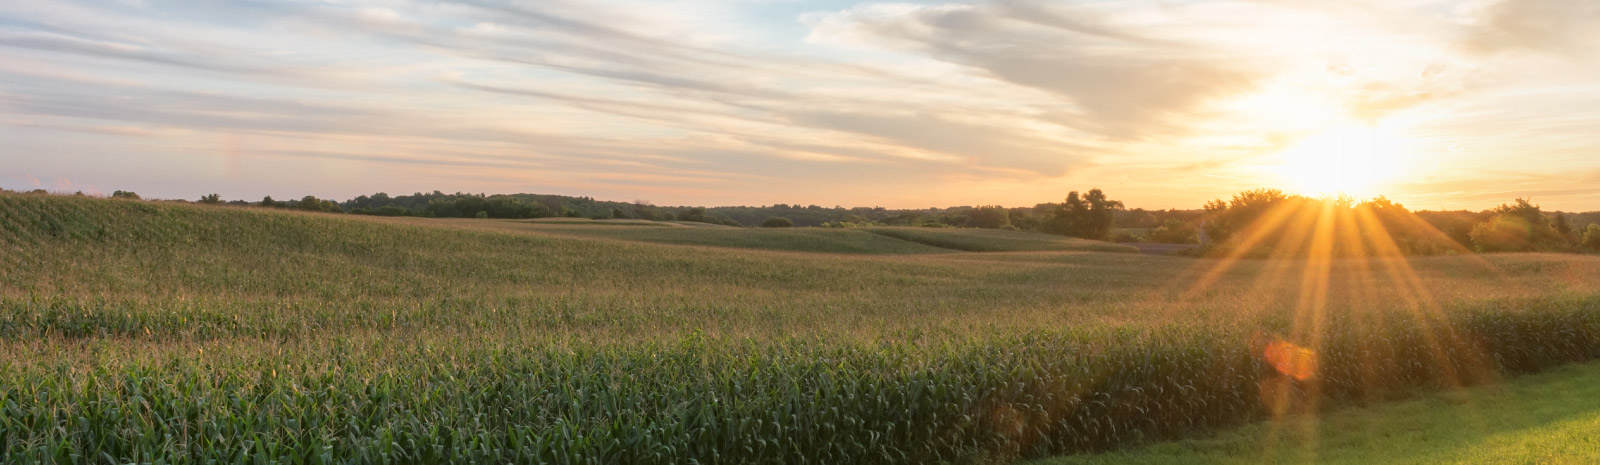 an evening sunset overlooking a corn field.